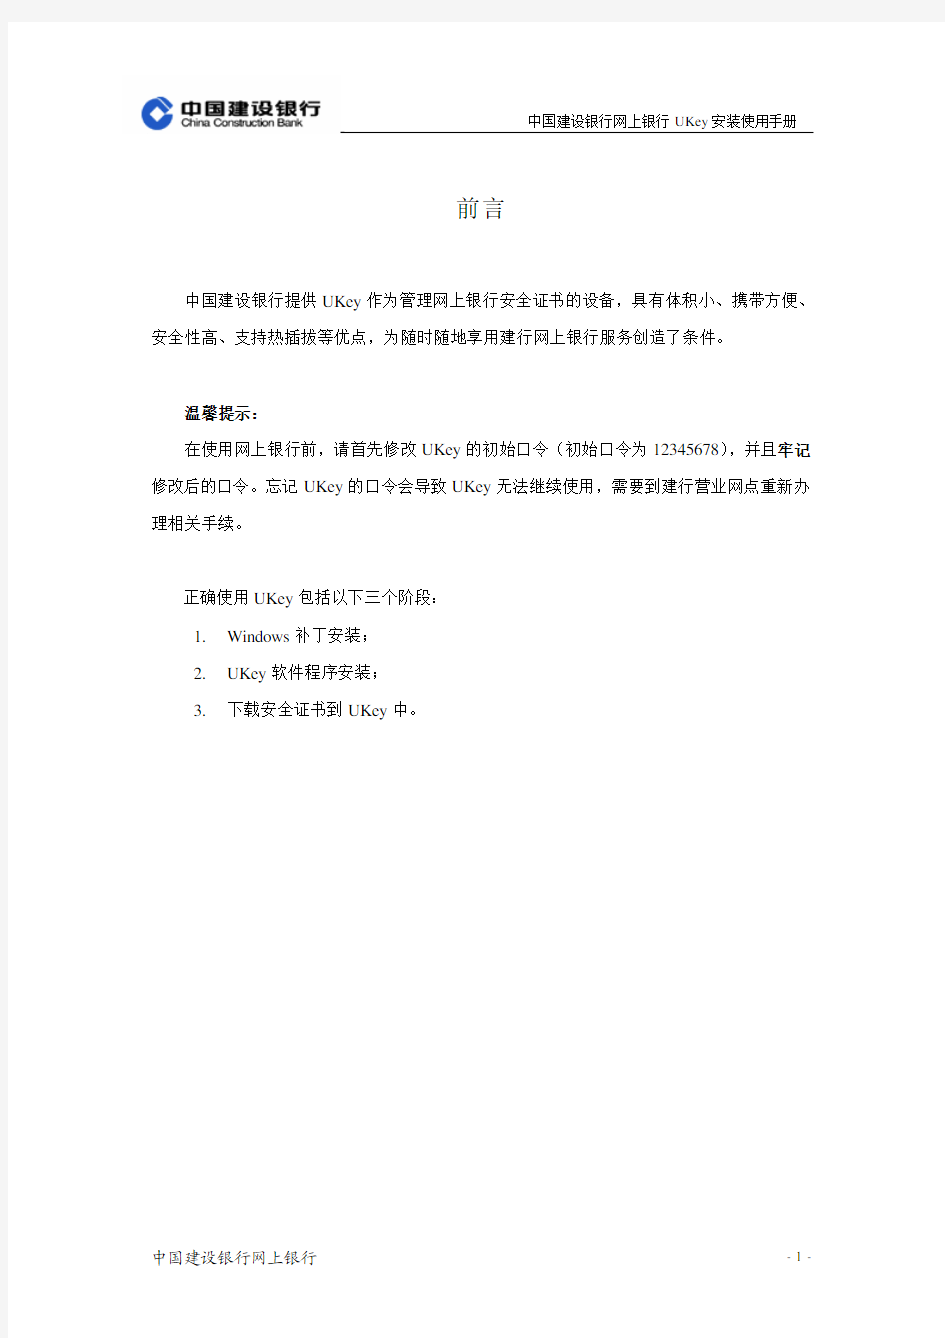 中国建设银行网上银行UKey安装使用手册